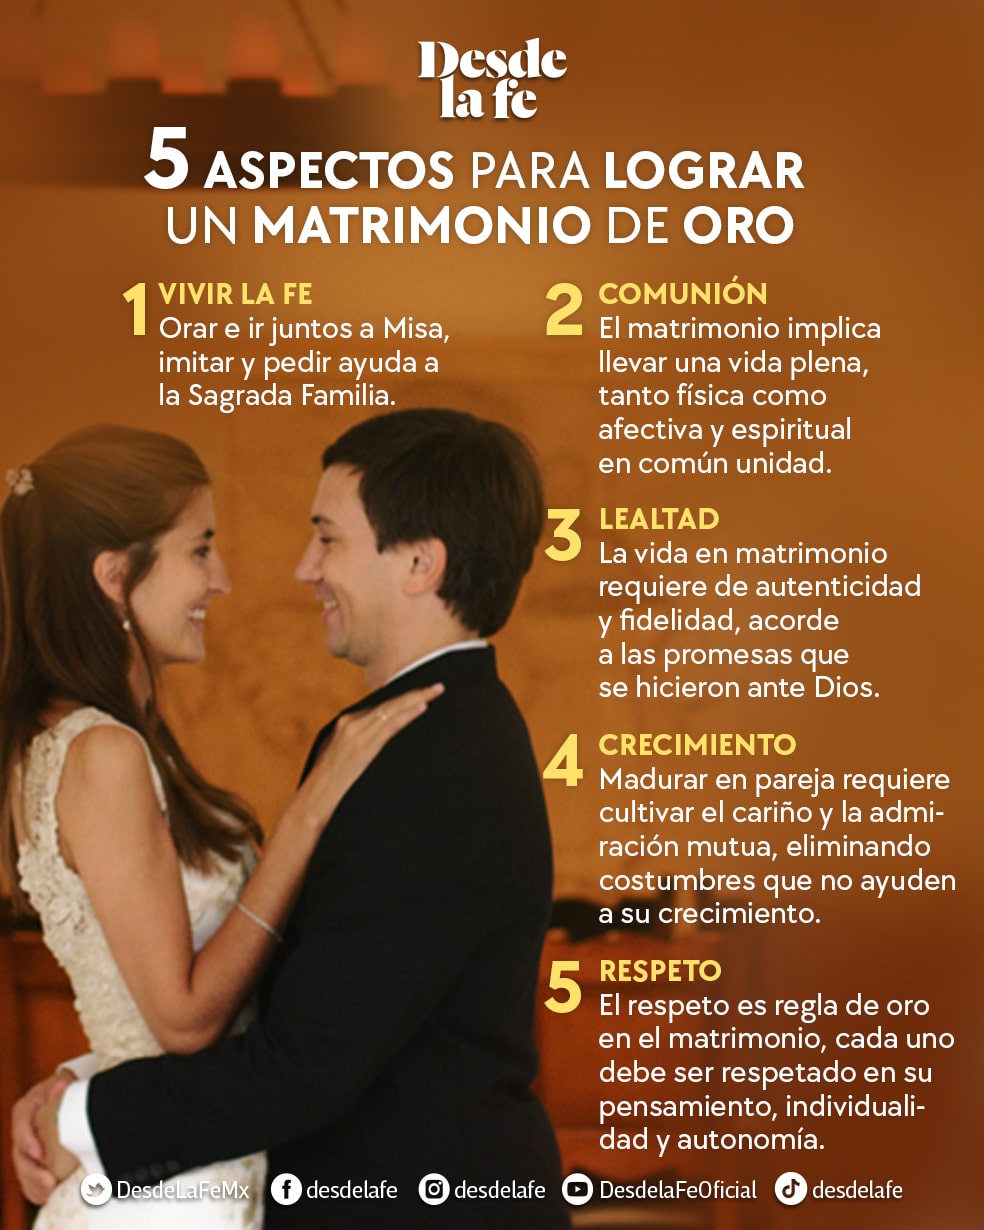 El padre Ángel Espinosa de los Monteros nos comparte algunos consejos para seguir casados y tener un Matrimonio duradero.